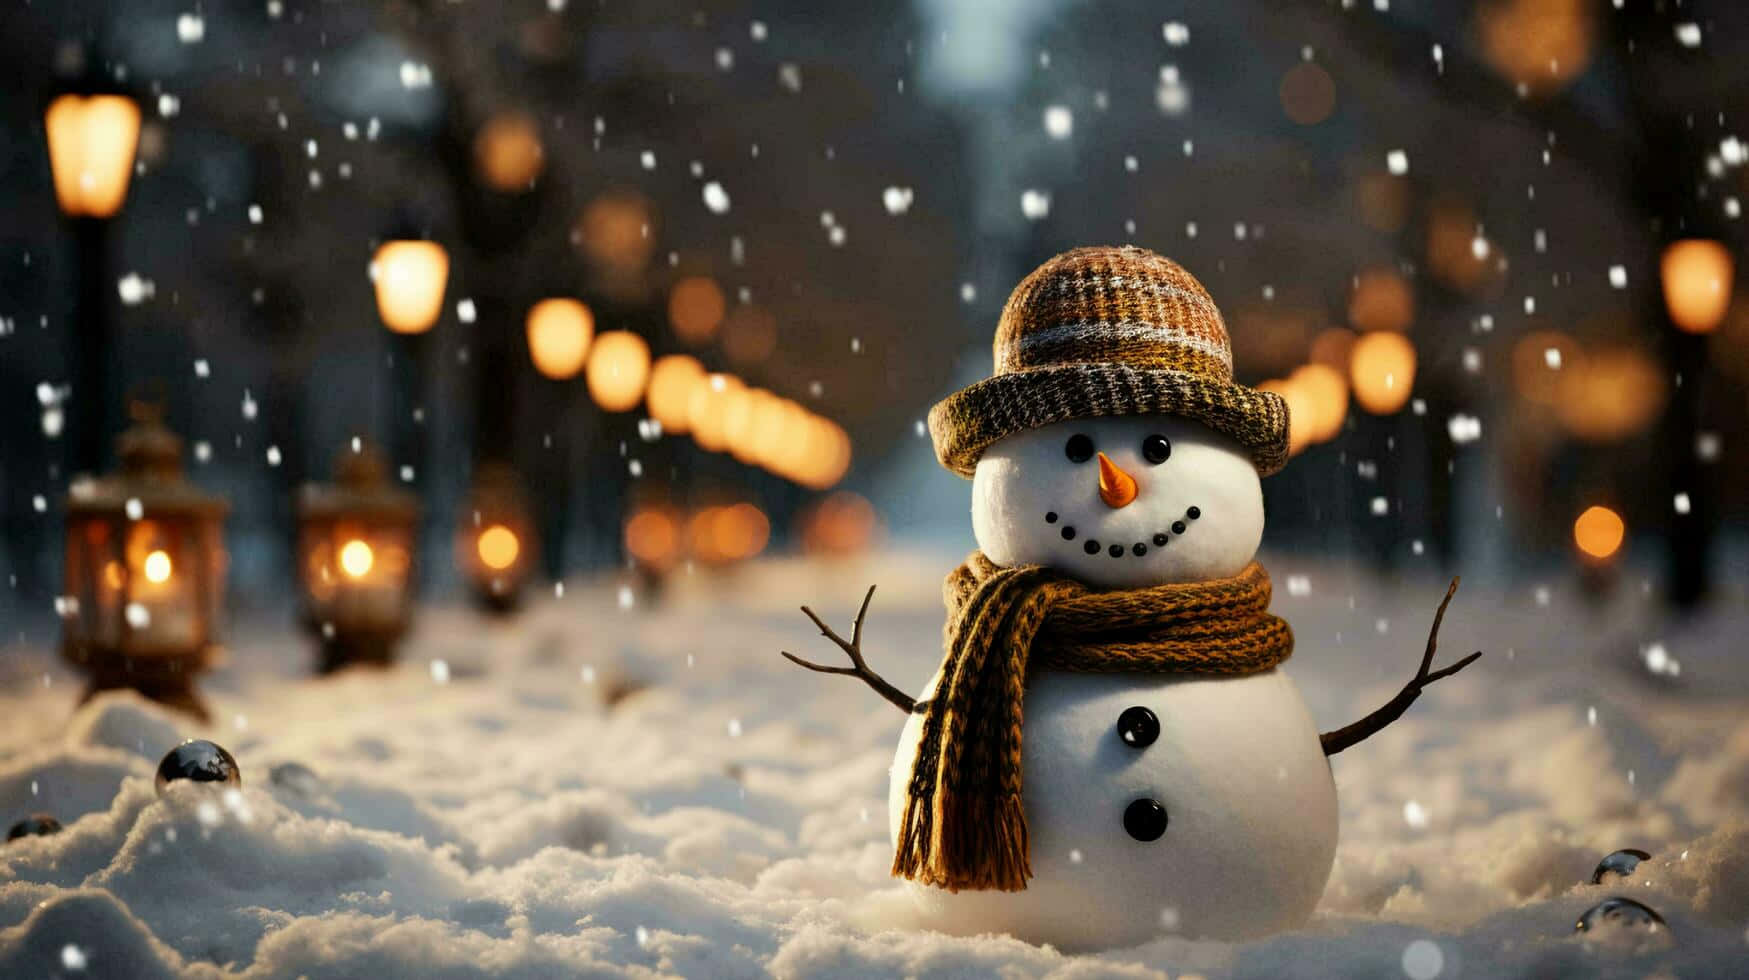 Enchanting Snowman Winter Night.jpg Wallpaper